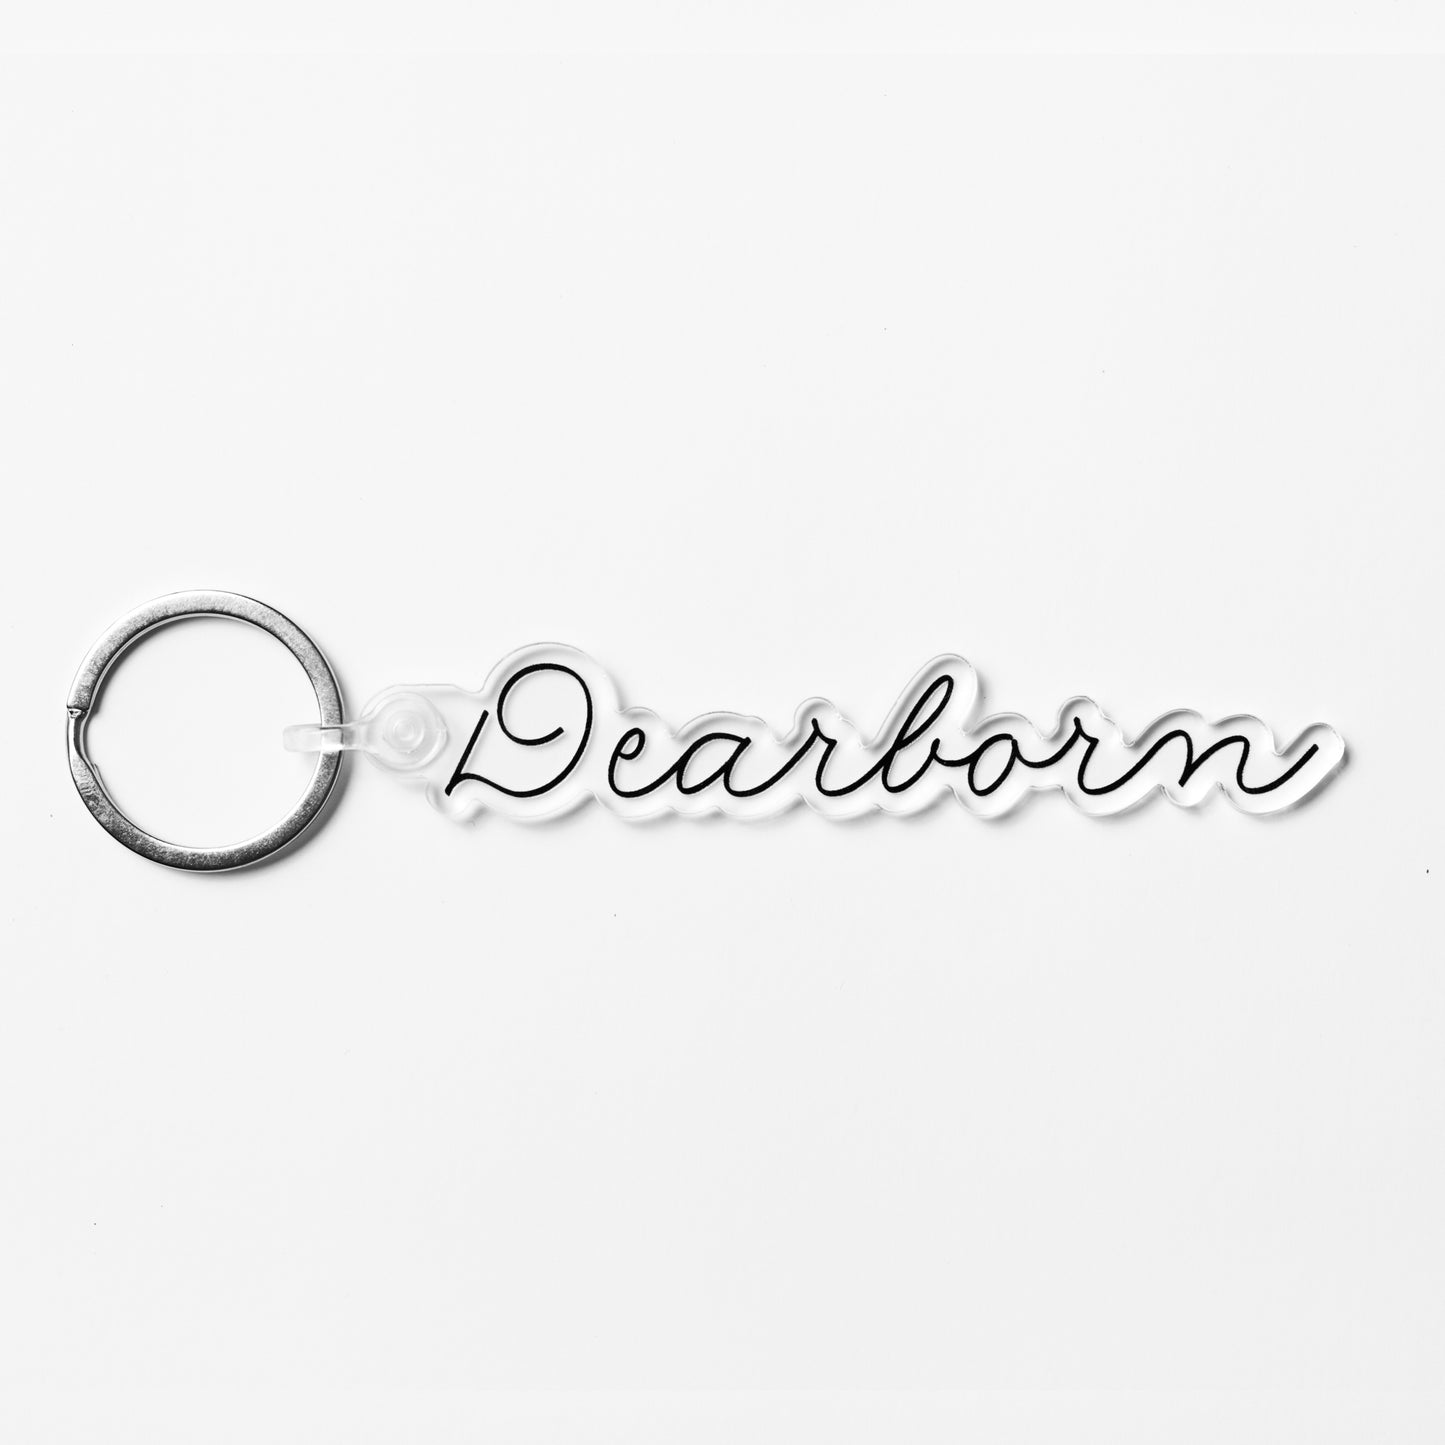 Dearborn Keychain